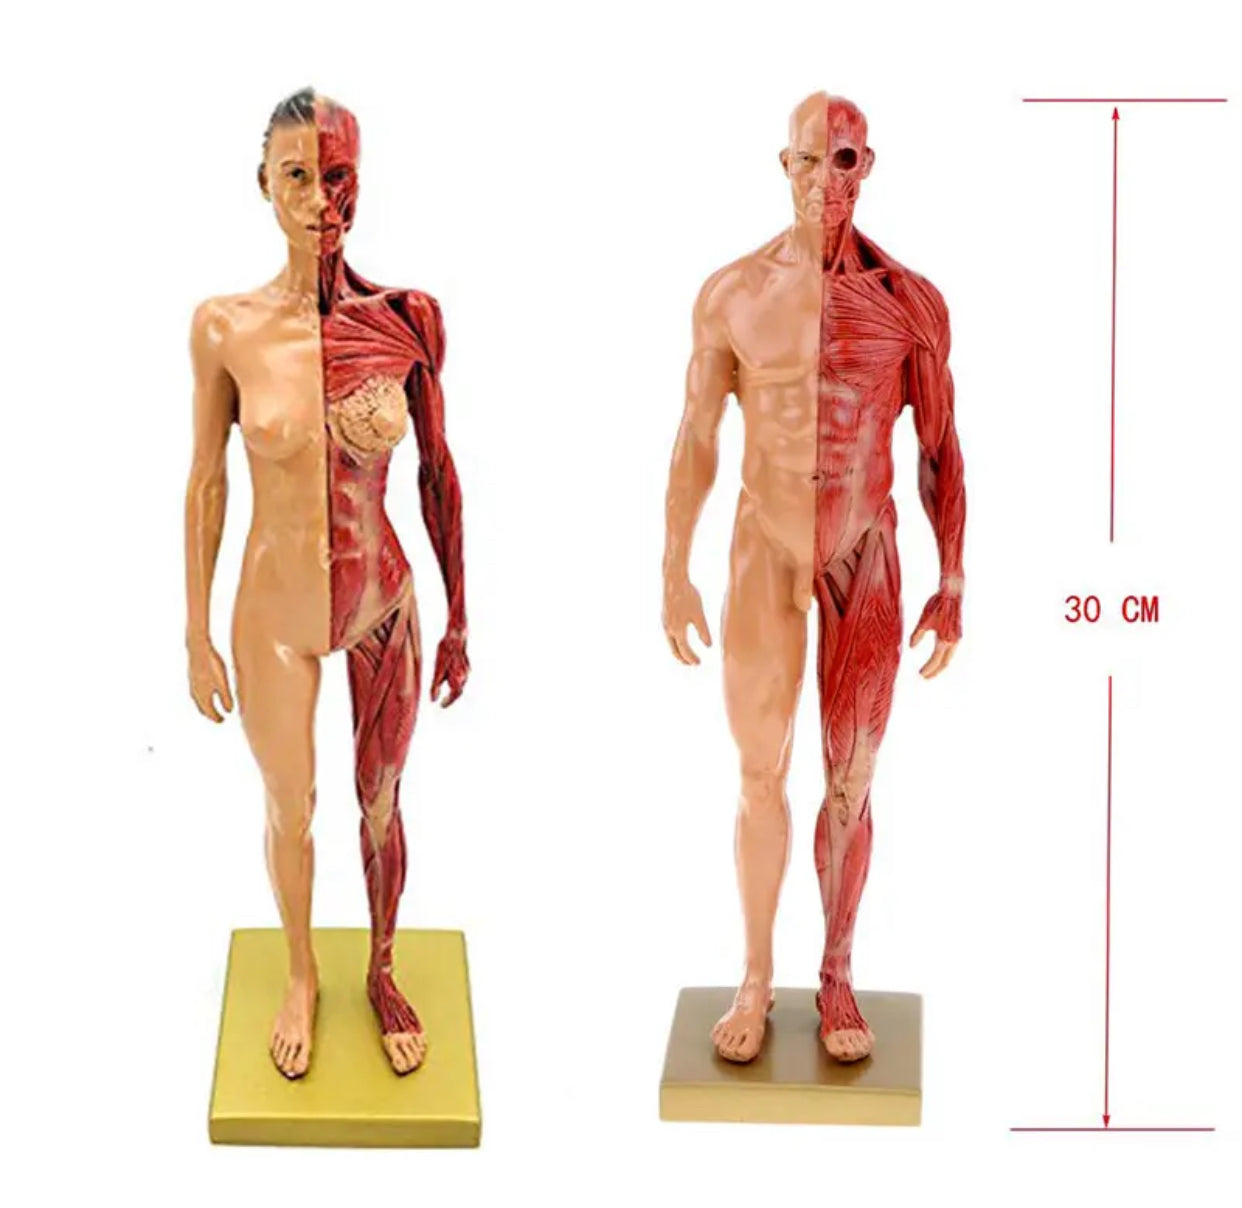 Modelo anatomico de cuerpo humano 30cm - muscular